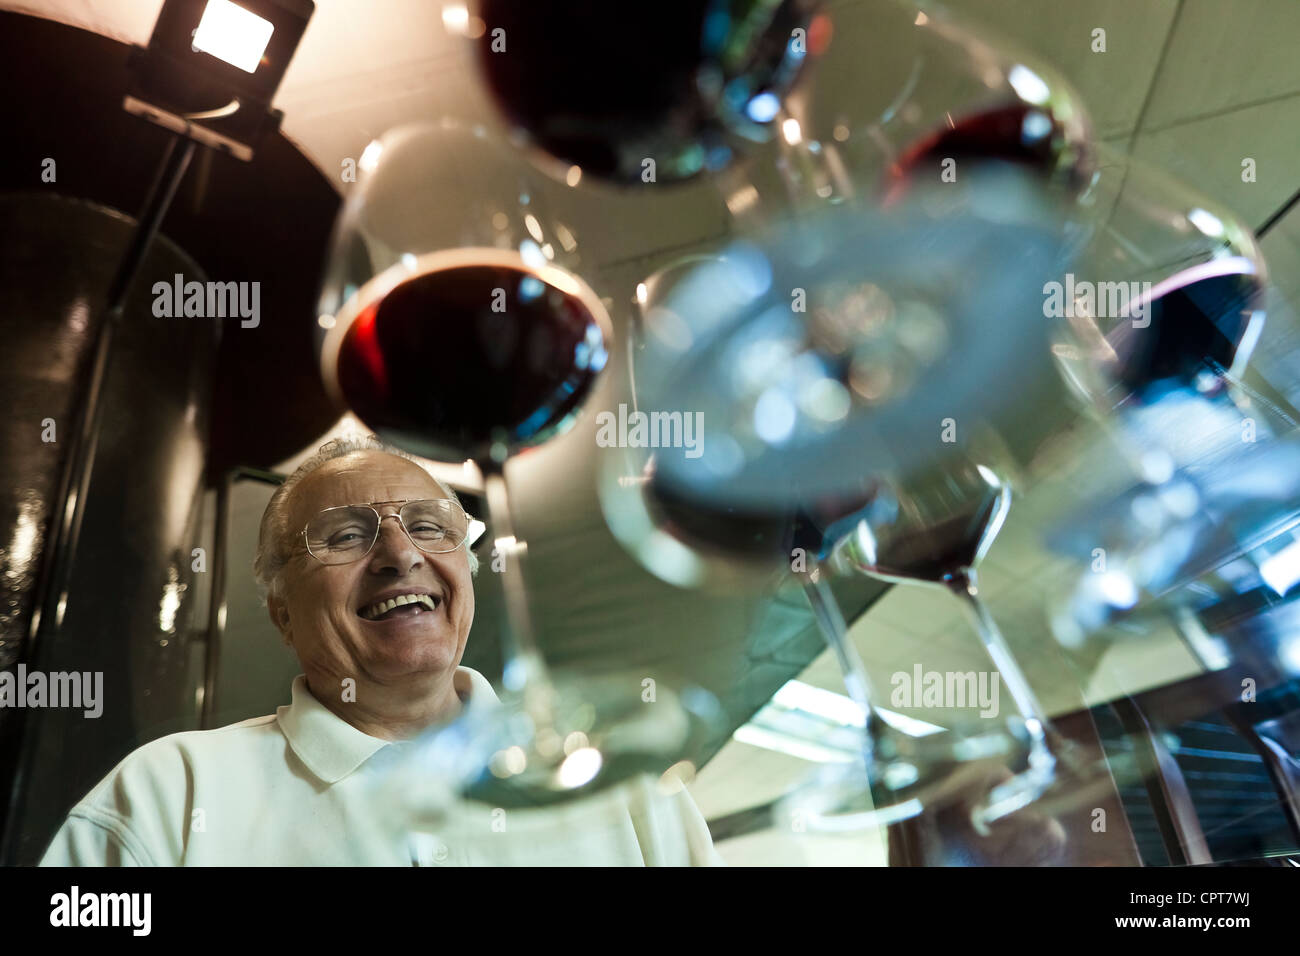 Angelo Gaja, un famoso vino italiano-productor., sobre una mesa, el maestro vino ha dispuesto algunas copas de degustación de vino. Foto de stock